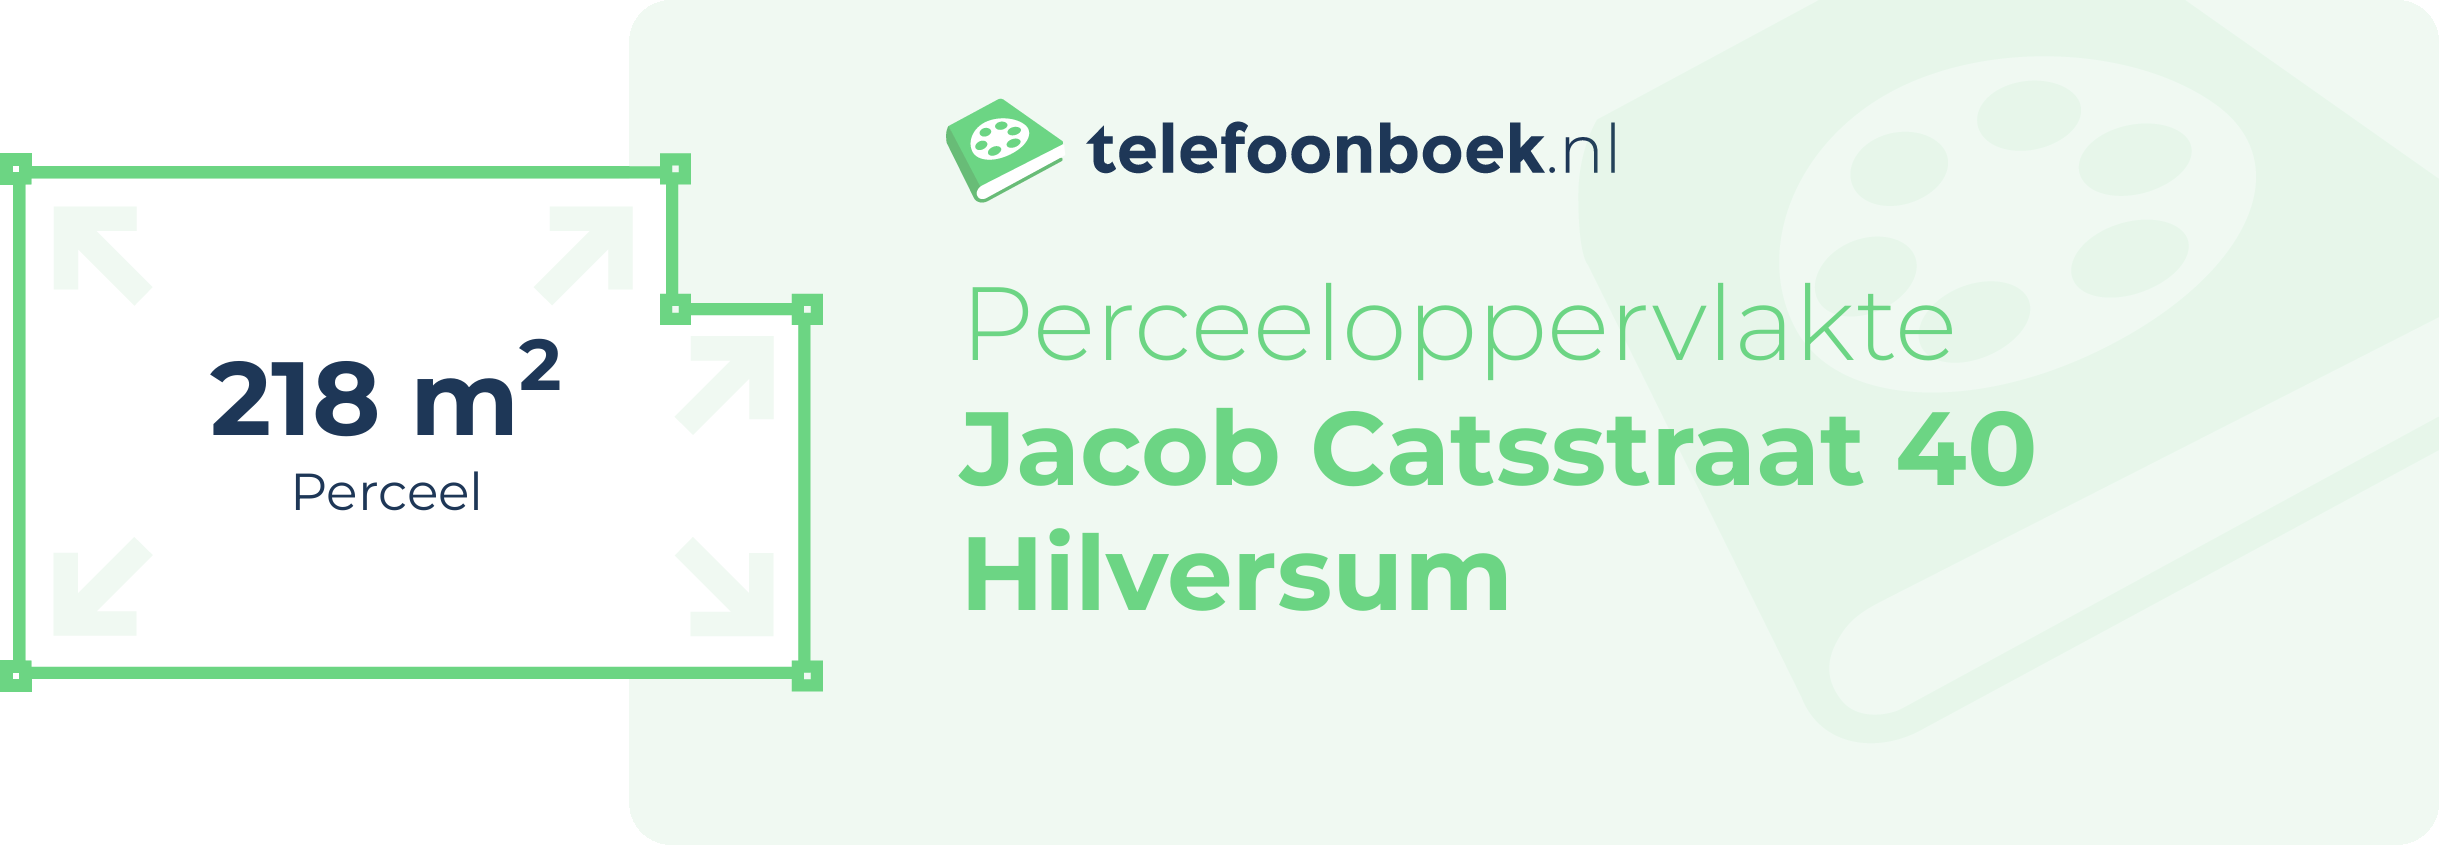 Perceeloppervlakte Jacob Catsstraat 40 Hilversum